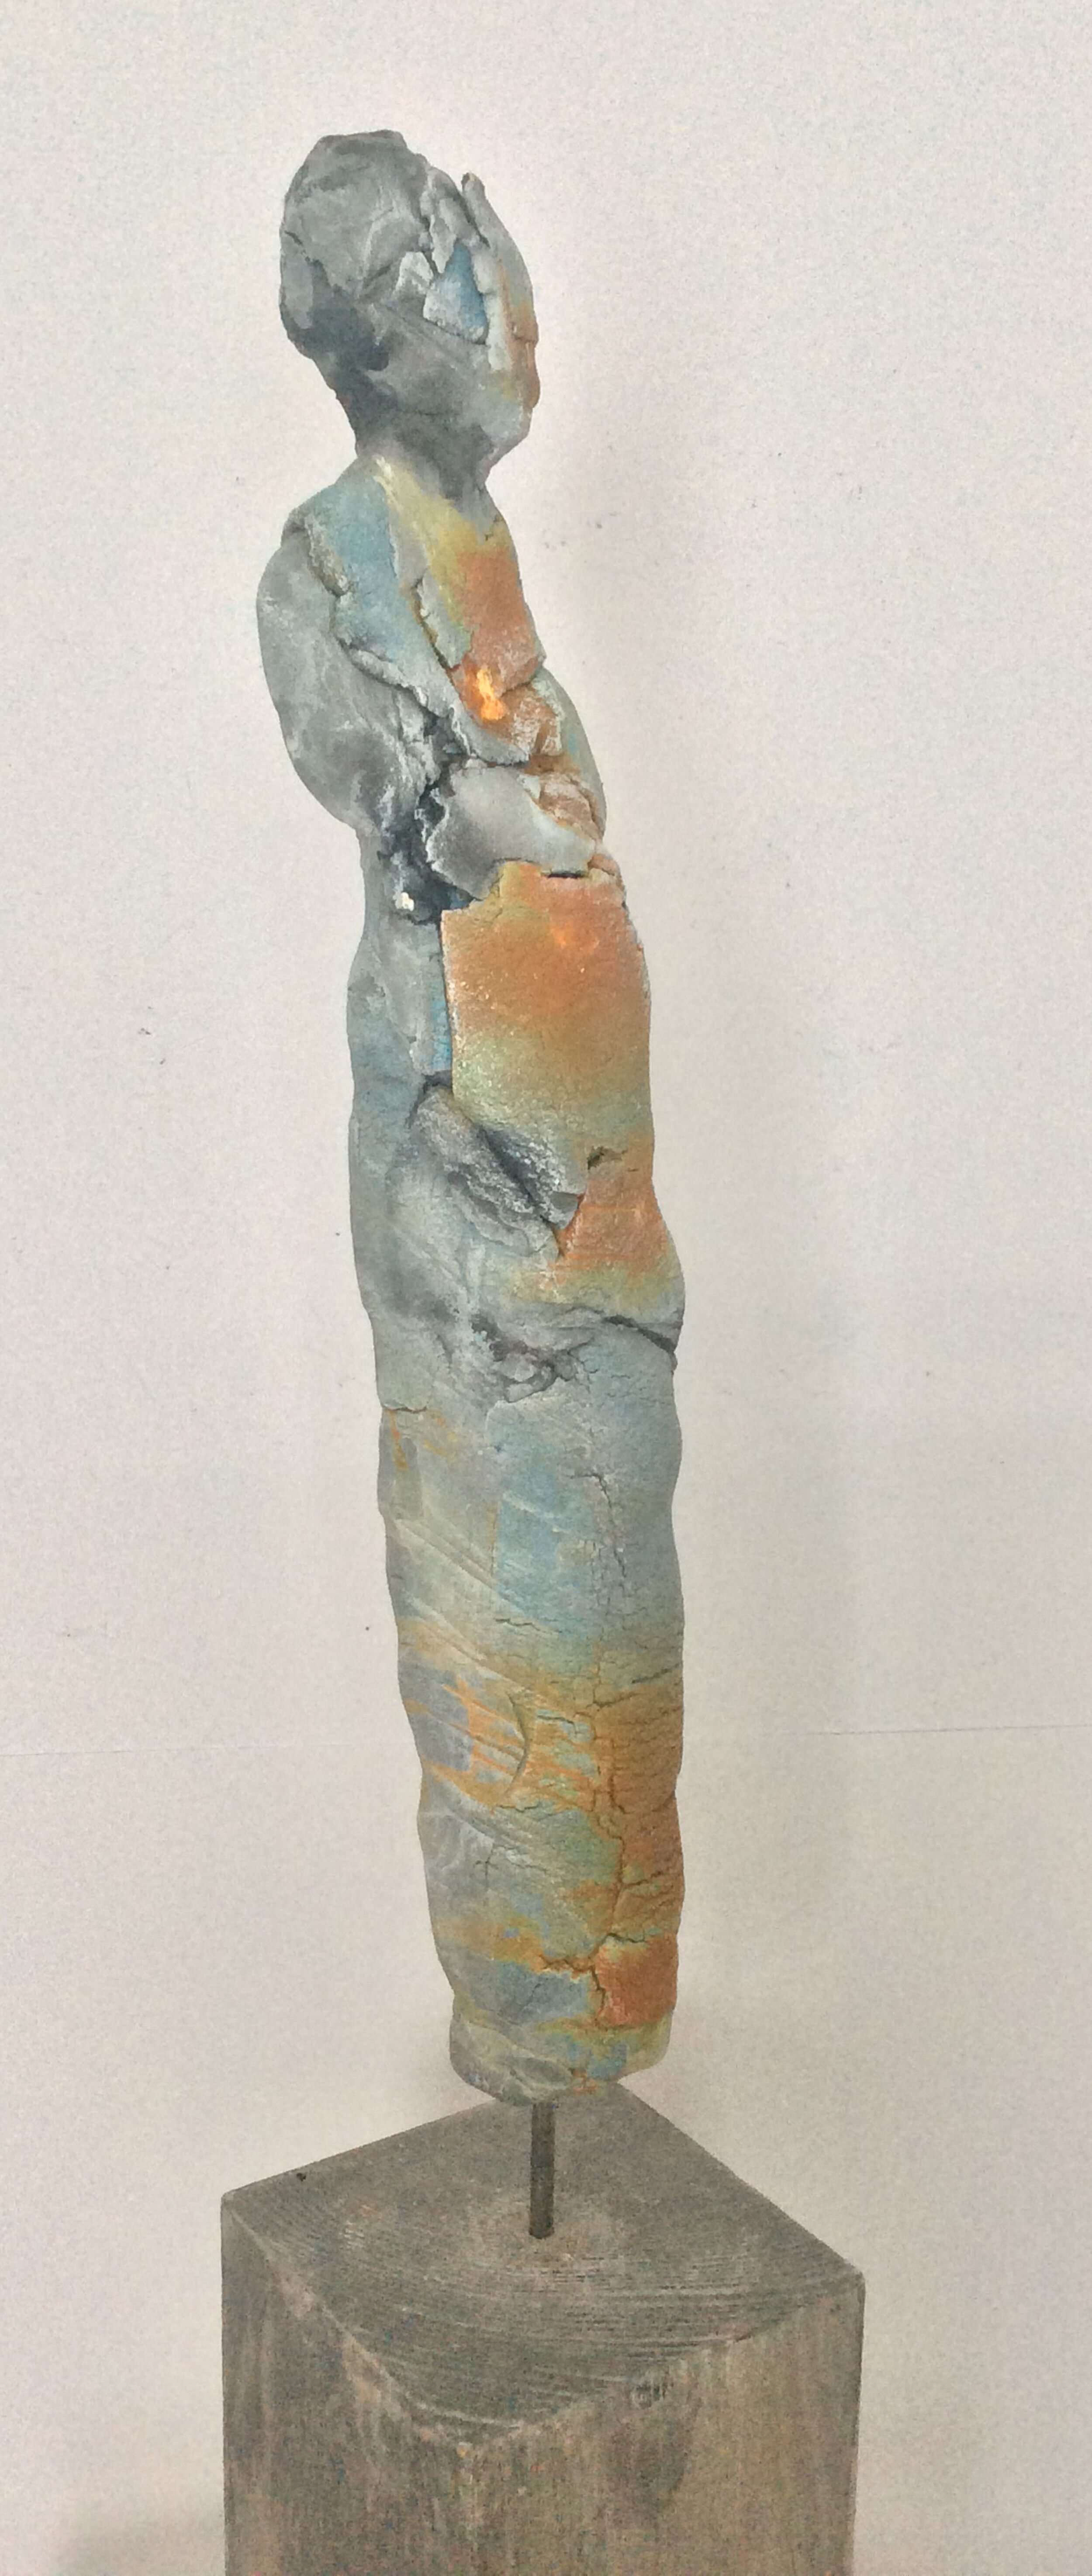 Sculpture "Figurine VIII" (2019)